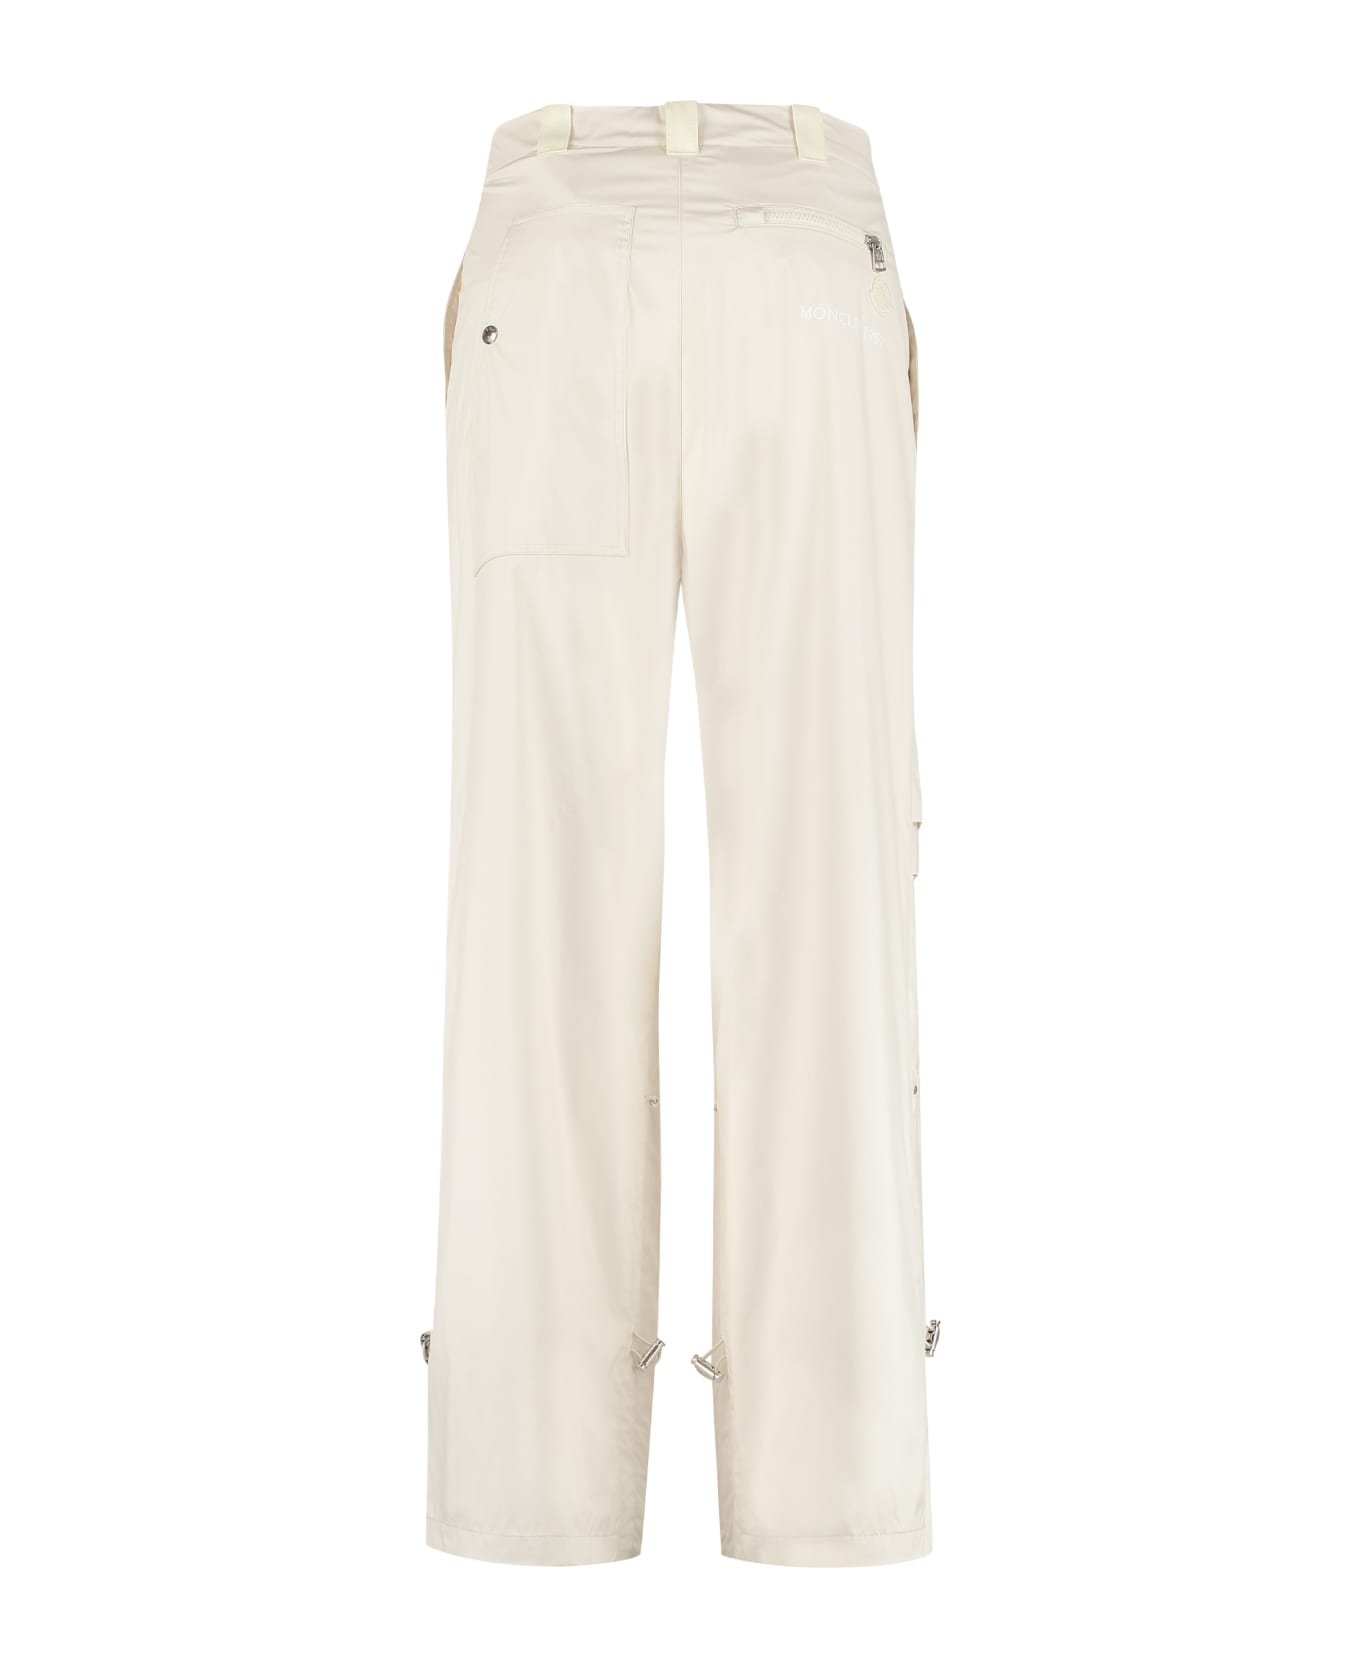 Moncler Genius 2 Moncler 1952 - Technical Fabric Pants - panna